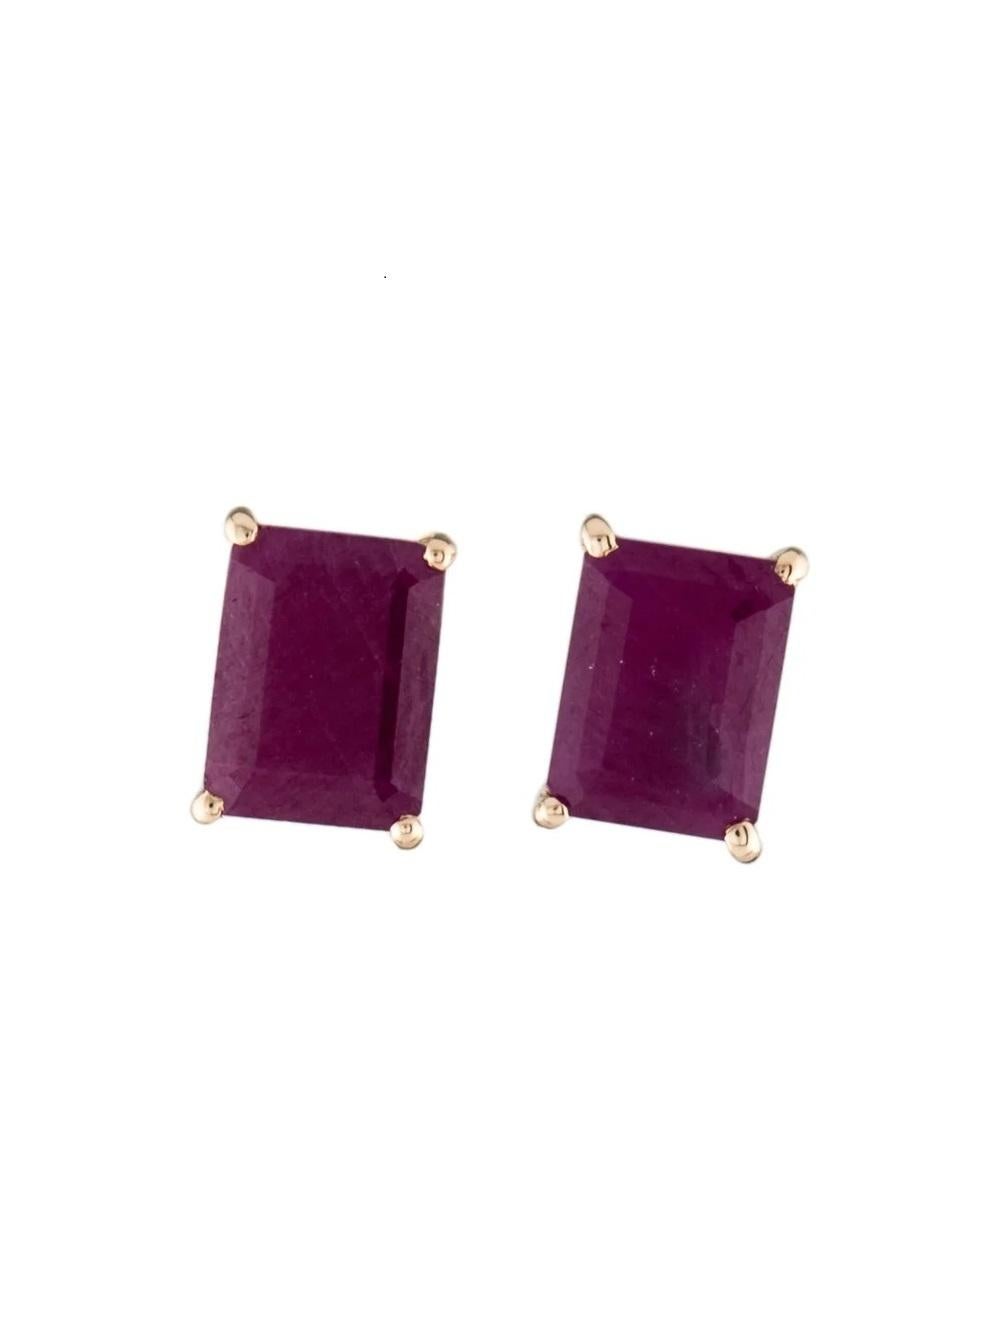 Boucles d'oreilles 14K 3.12ctw Ruby : Elegance Timelessance in Brilliant Red Gems (en anglais) Neuf - En vente à Holtsville, NY